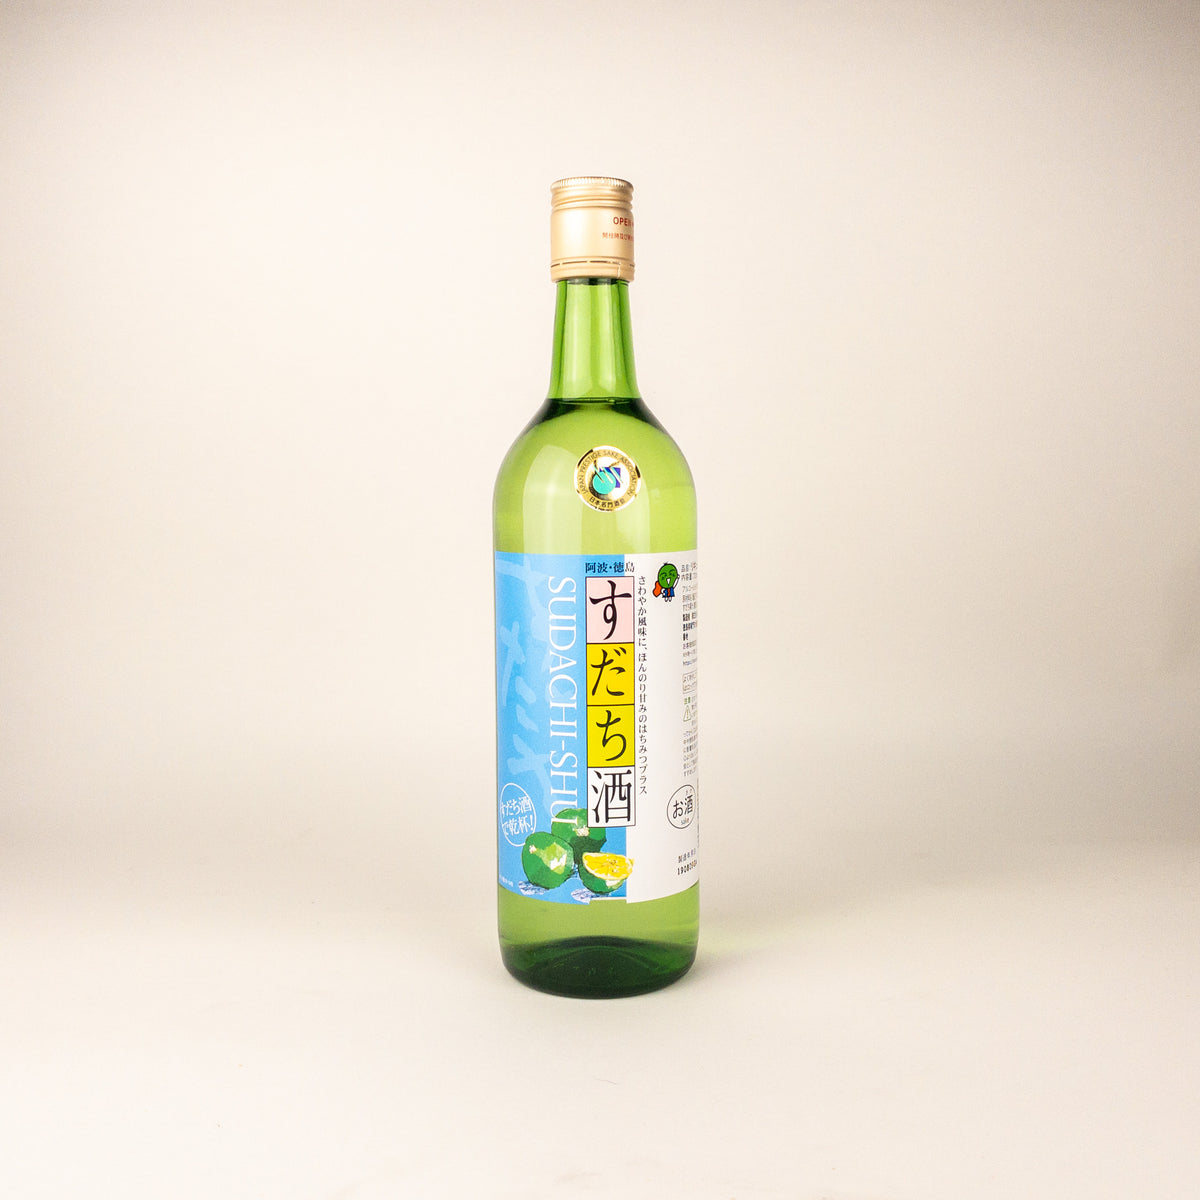 <!--3900--!>Narutotai Sudachi Lime Sake